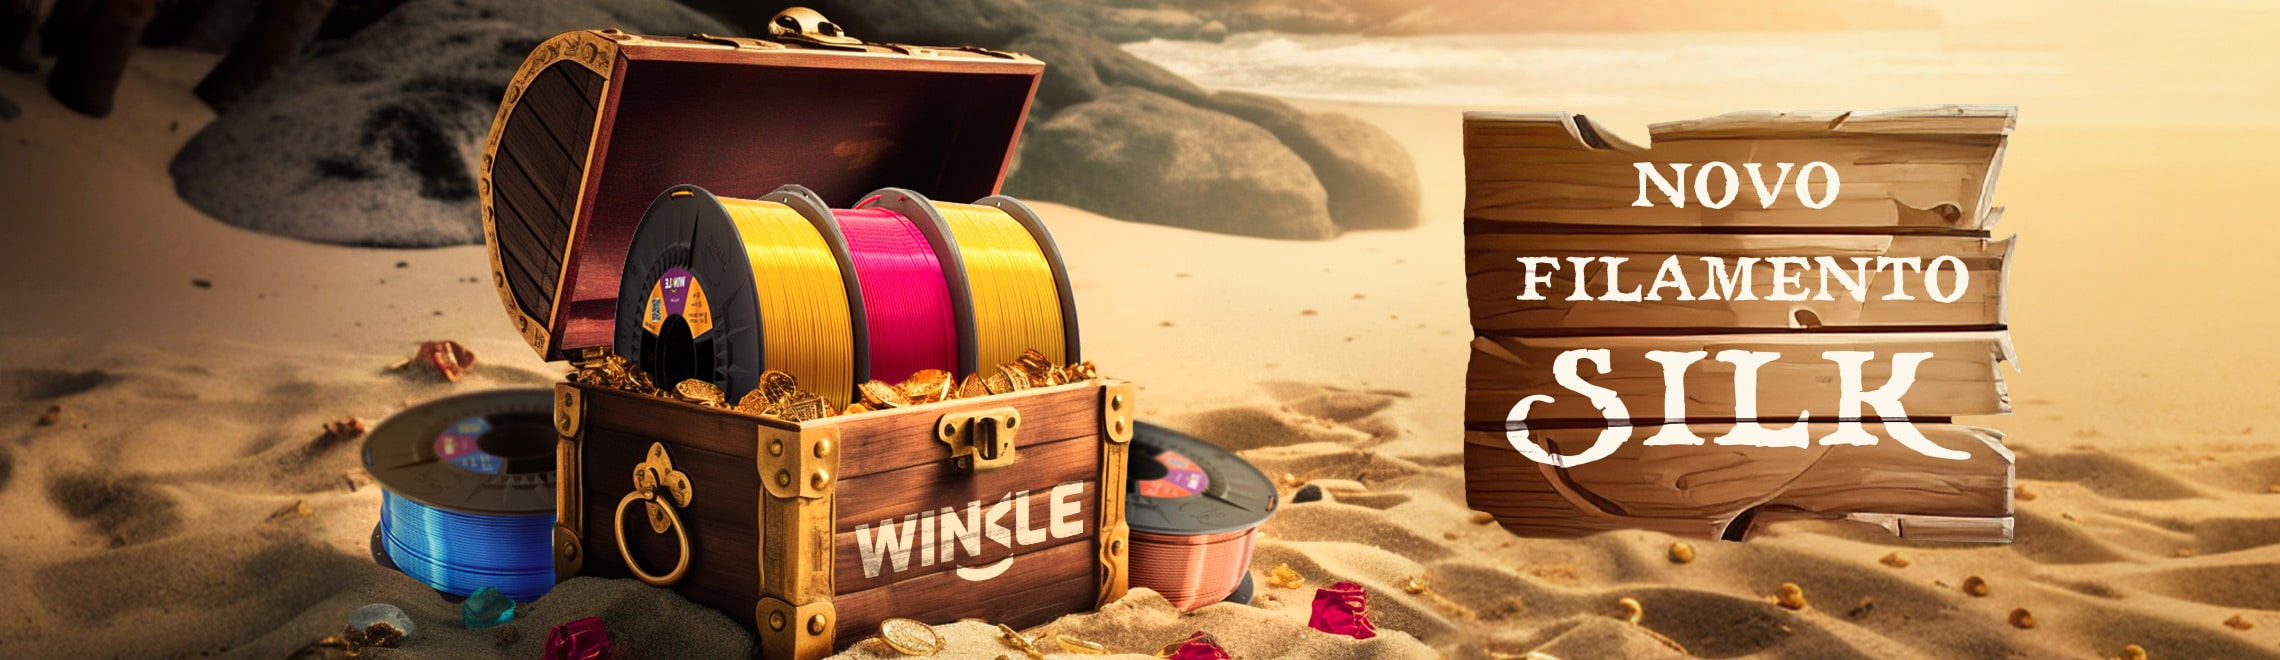 Banner promocional aos novos filamentos SILK da marca Winkle